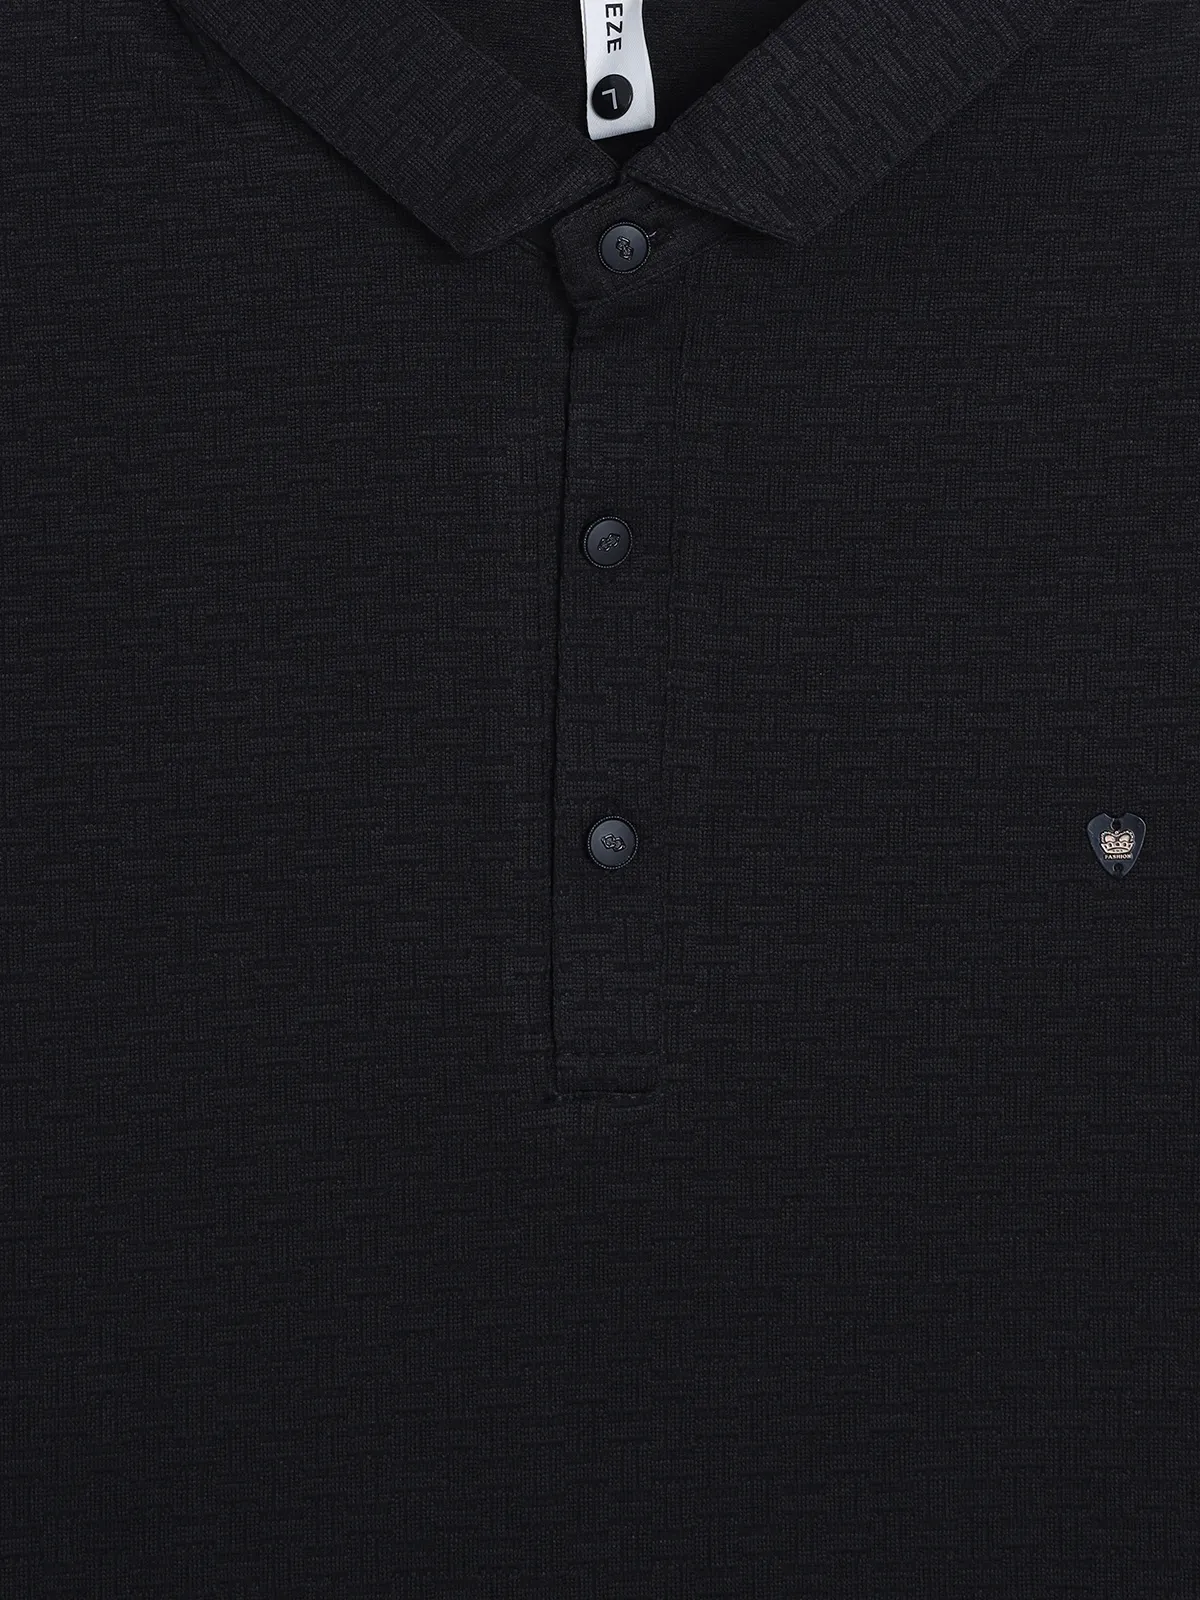 FREEZE cotton black texture t-shirt